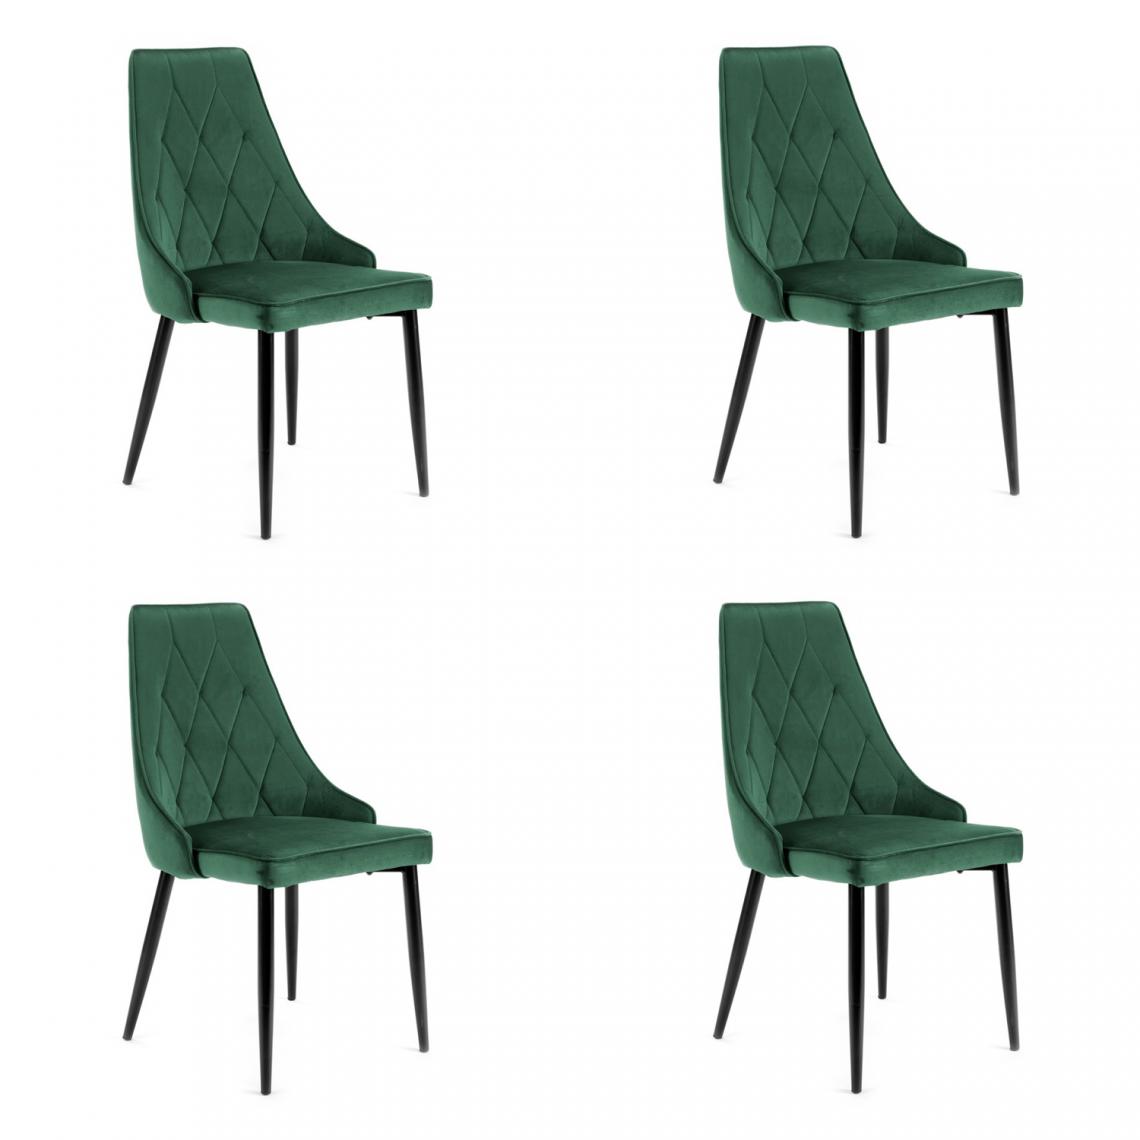 Hucoco - SOROLI - Chaise rembourrée 4 pcs style moderne salon/salle à manger - 88x44x42 - Pieds en métal - Vert - Chaises